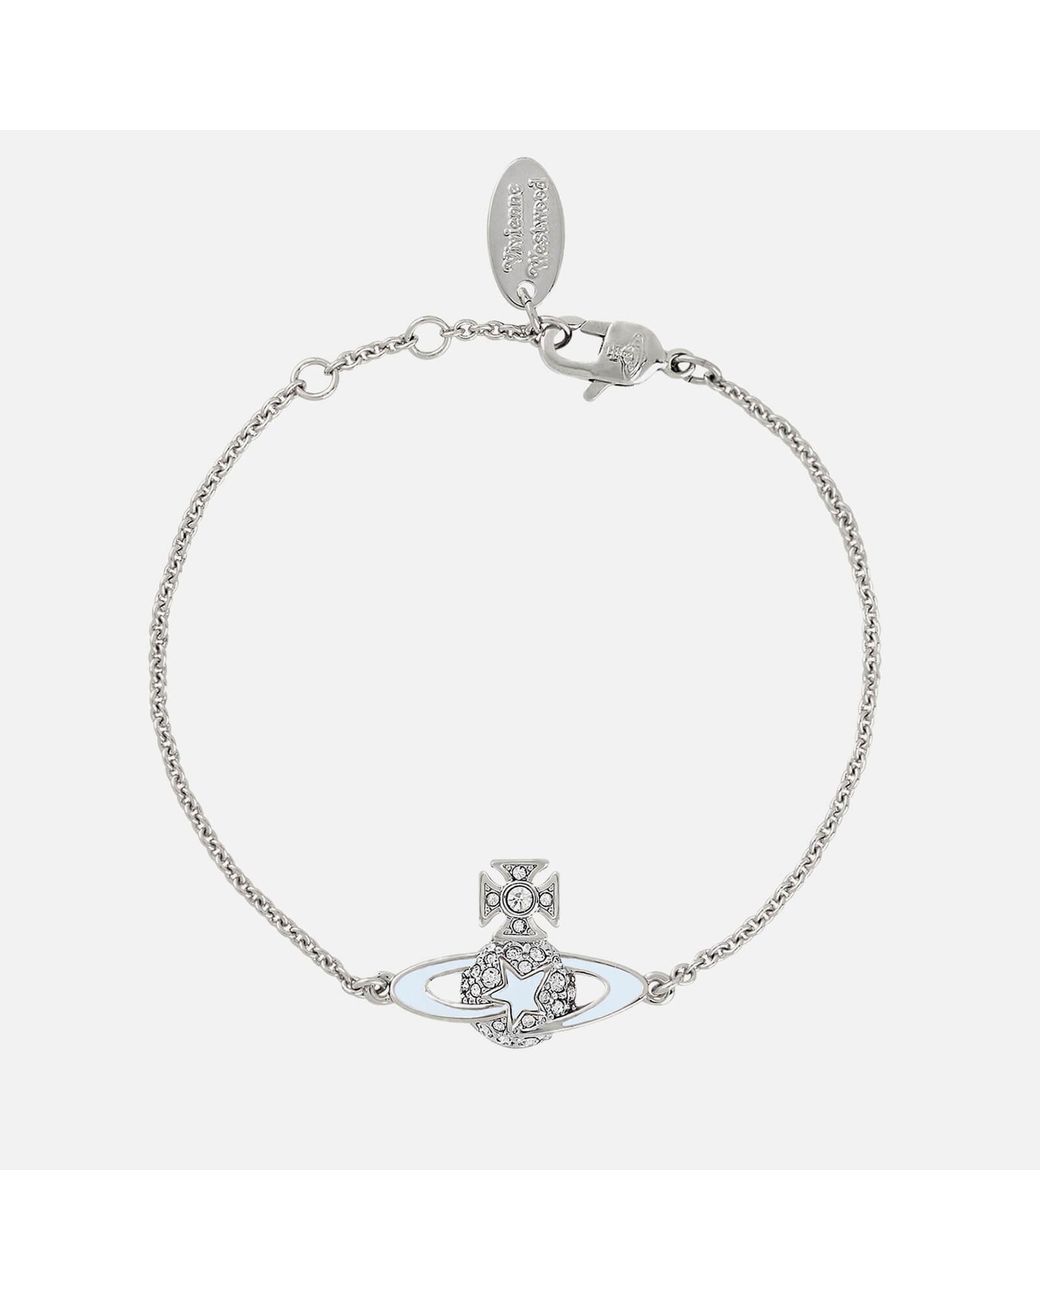 Vivienne Westwood Annalisa Silver-Toned Crystal Bracelet